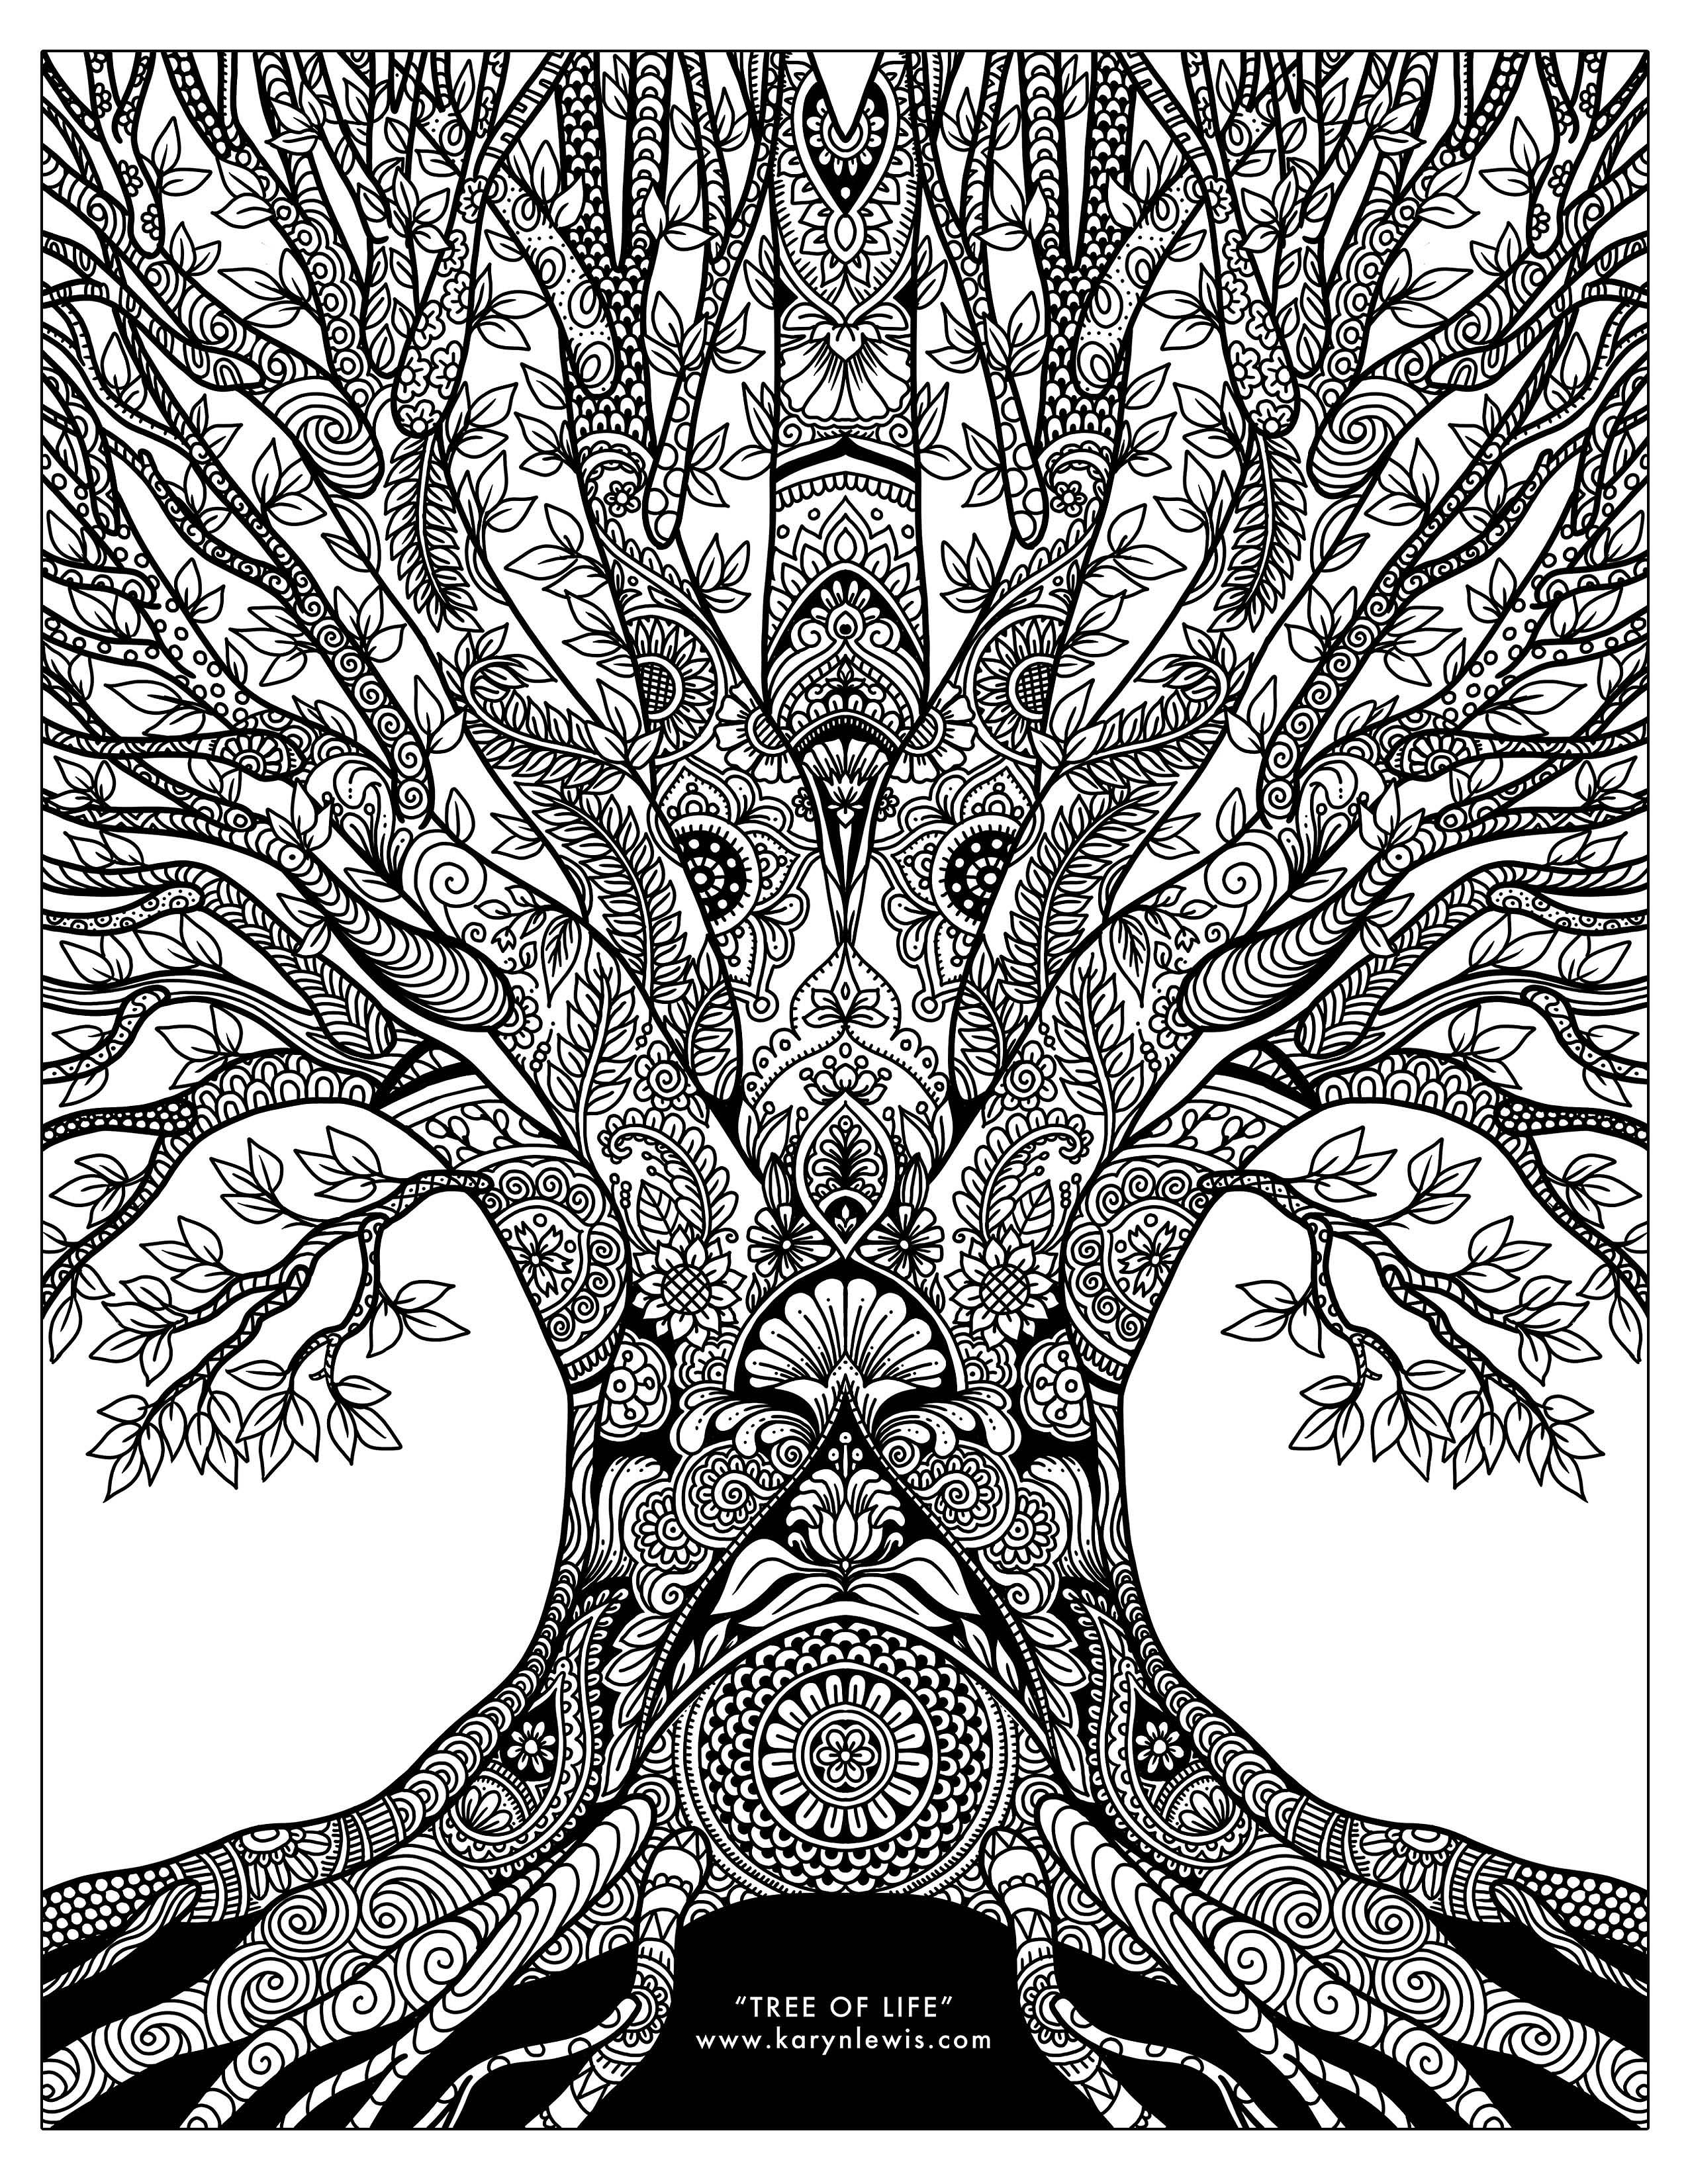 treenaturedoodle1FREEBIEprint.jpg (2550×3300